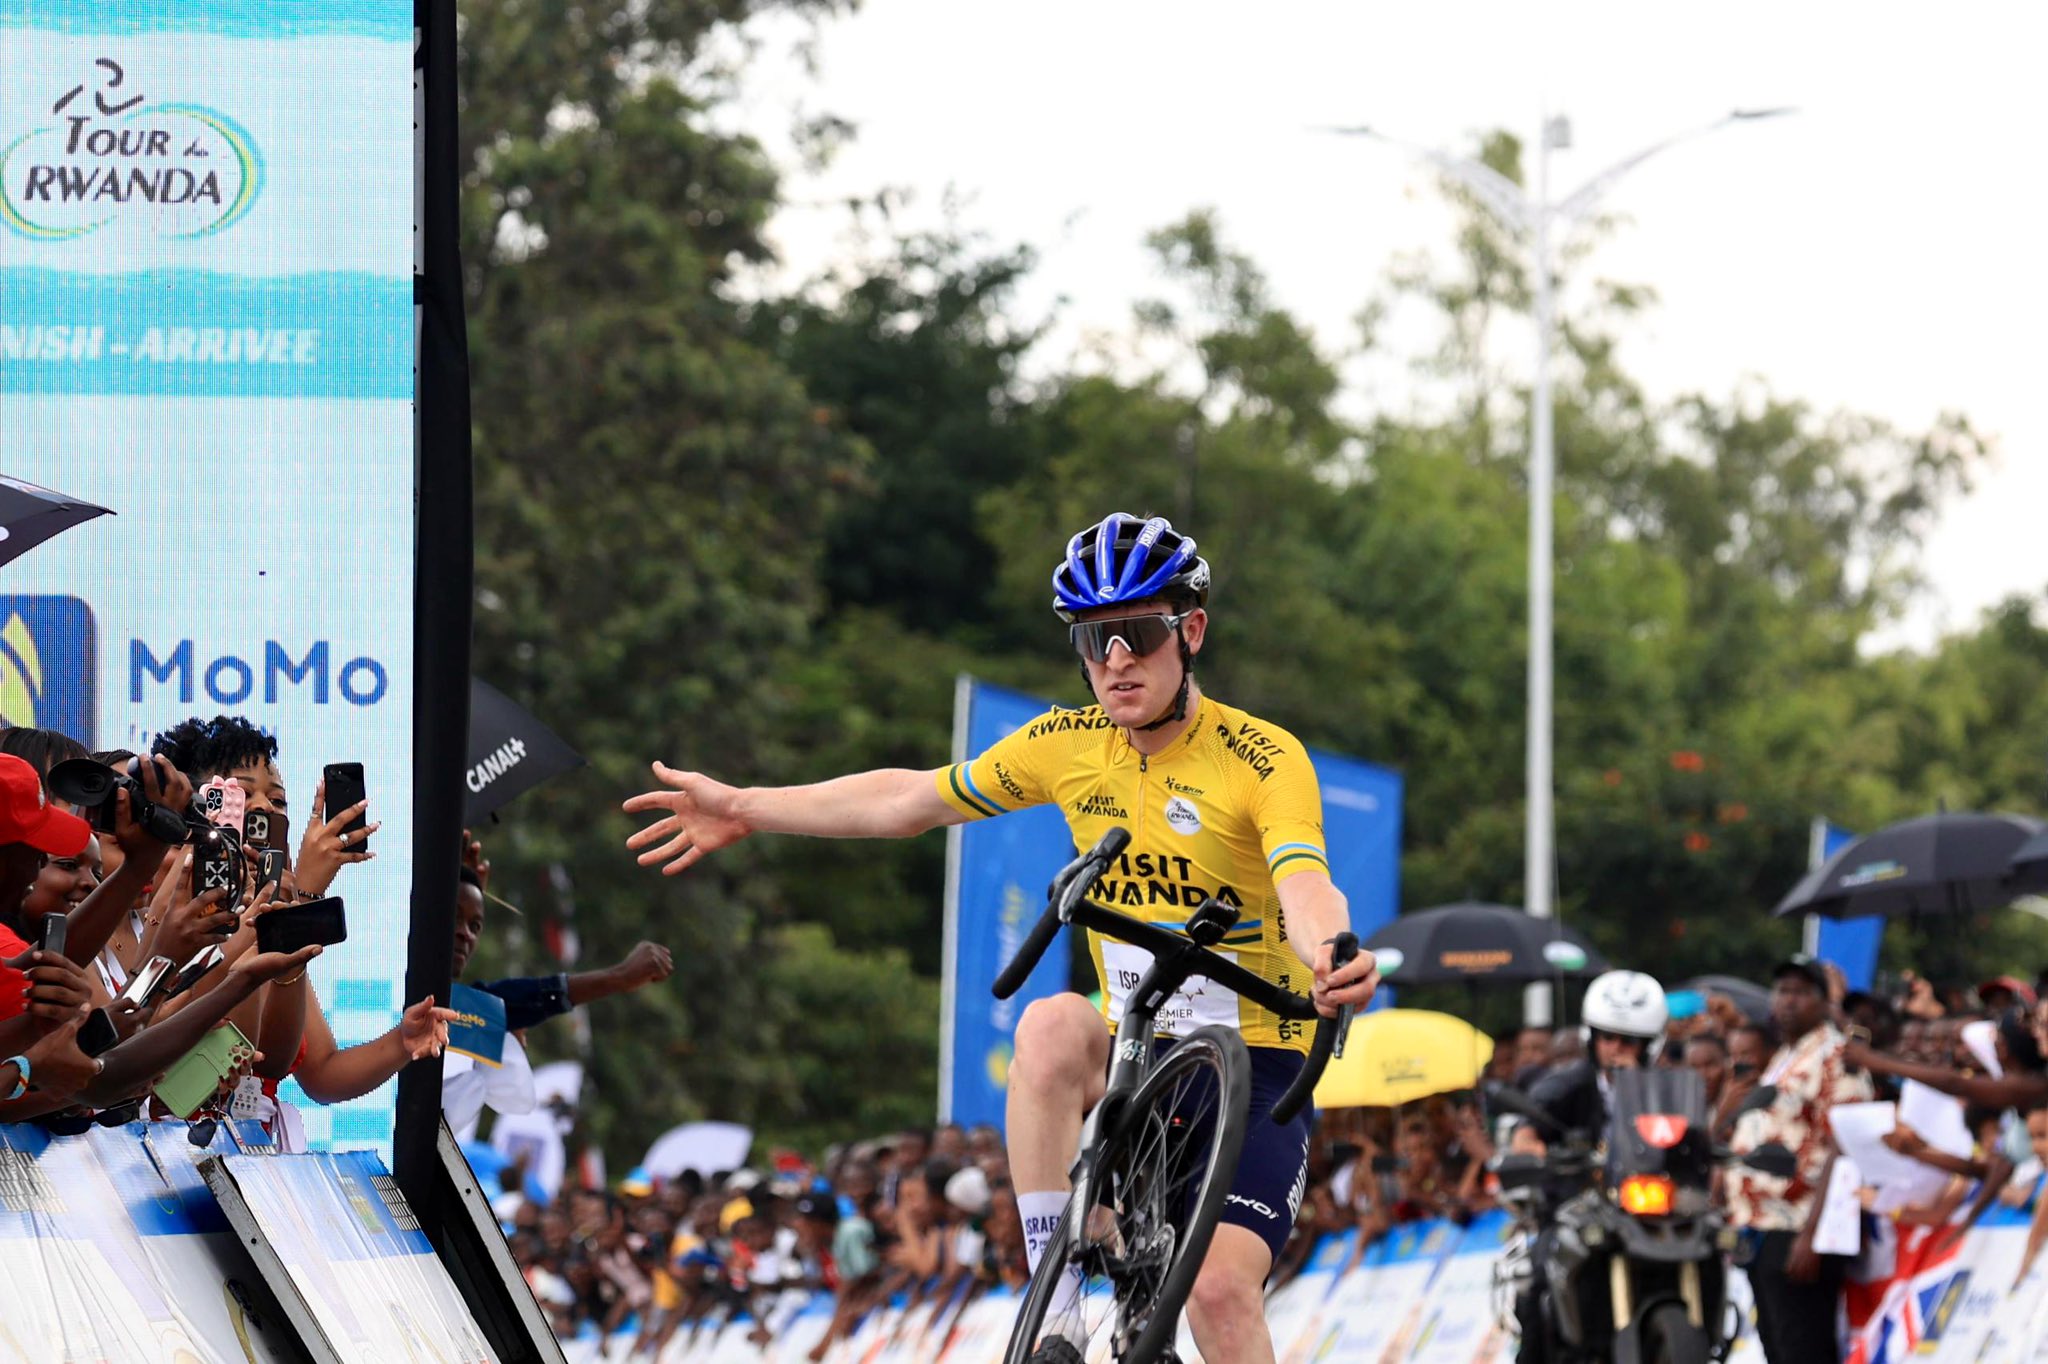 Classement de la 8ème étape du Tour of Rwanda, remportée par Joseph Blackmore